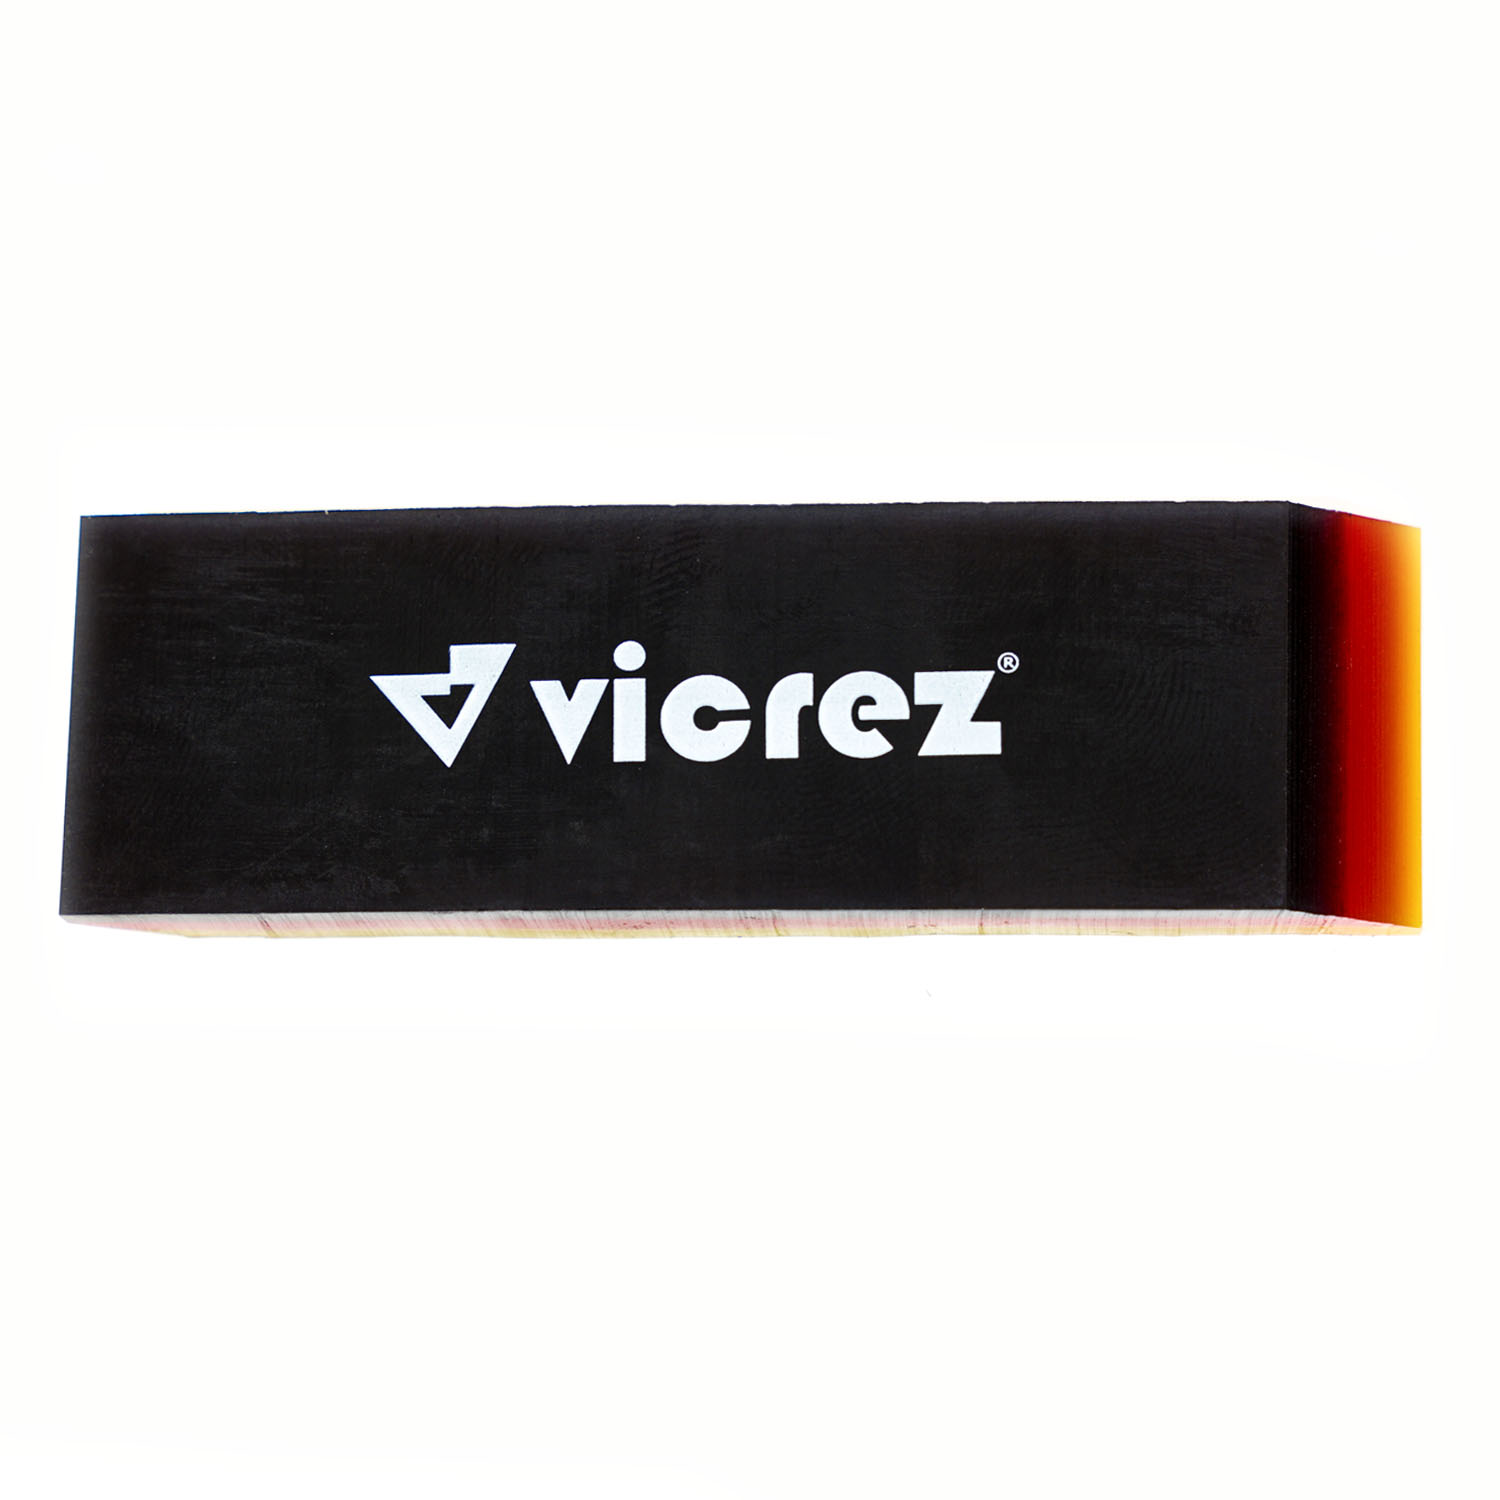 Vicrez vzt160 Vinyl Mini 3-Layer PPF Squeegee